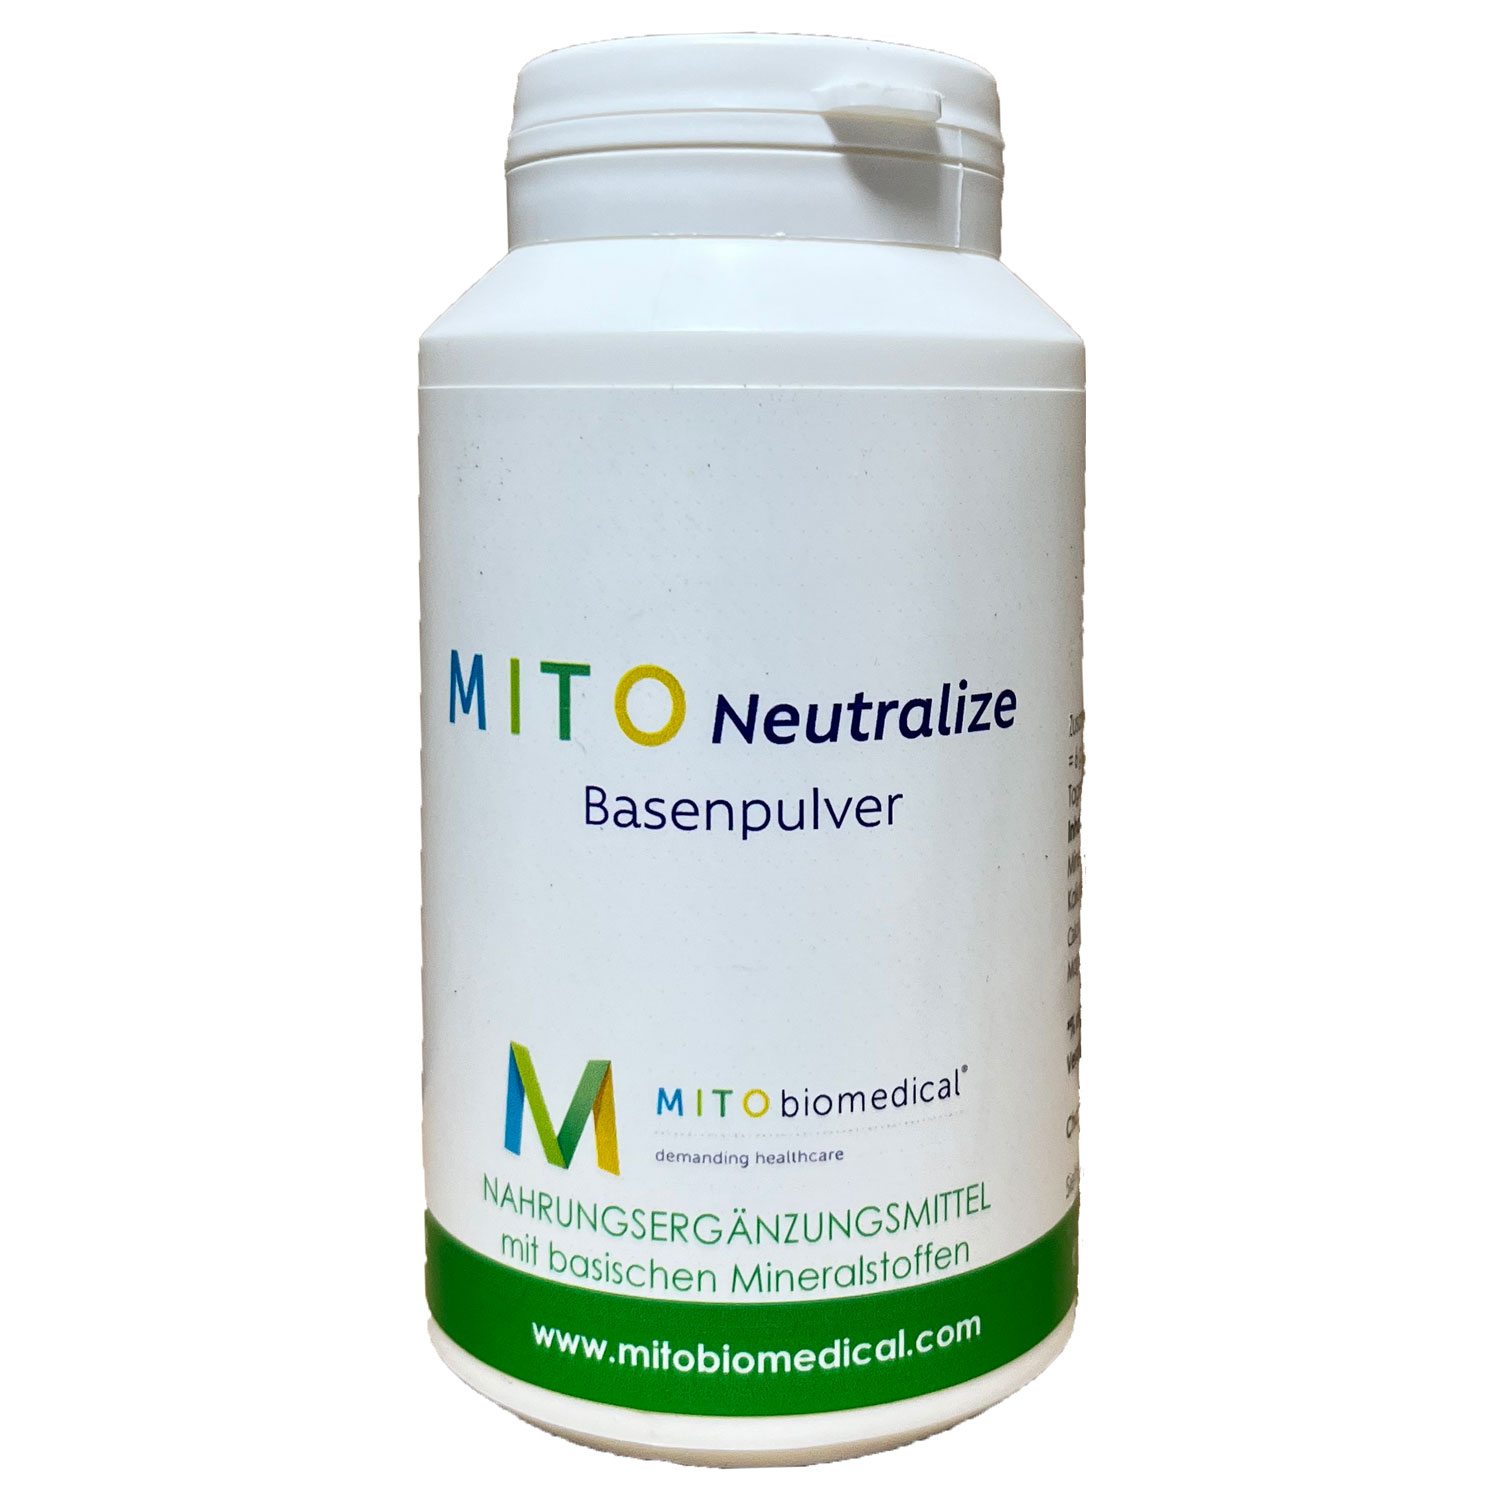 MITOneutralize von Mitobiomedical - 200g